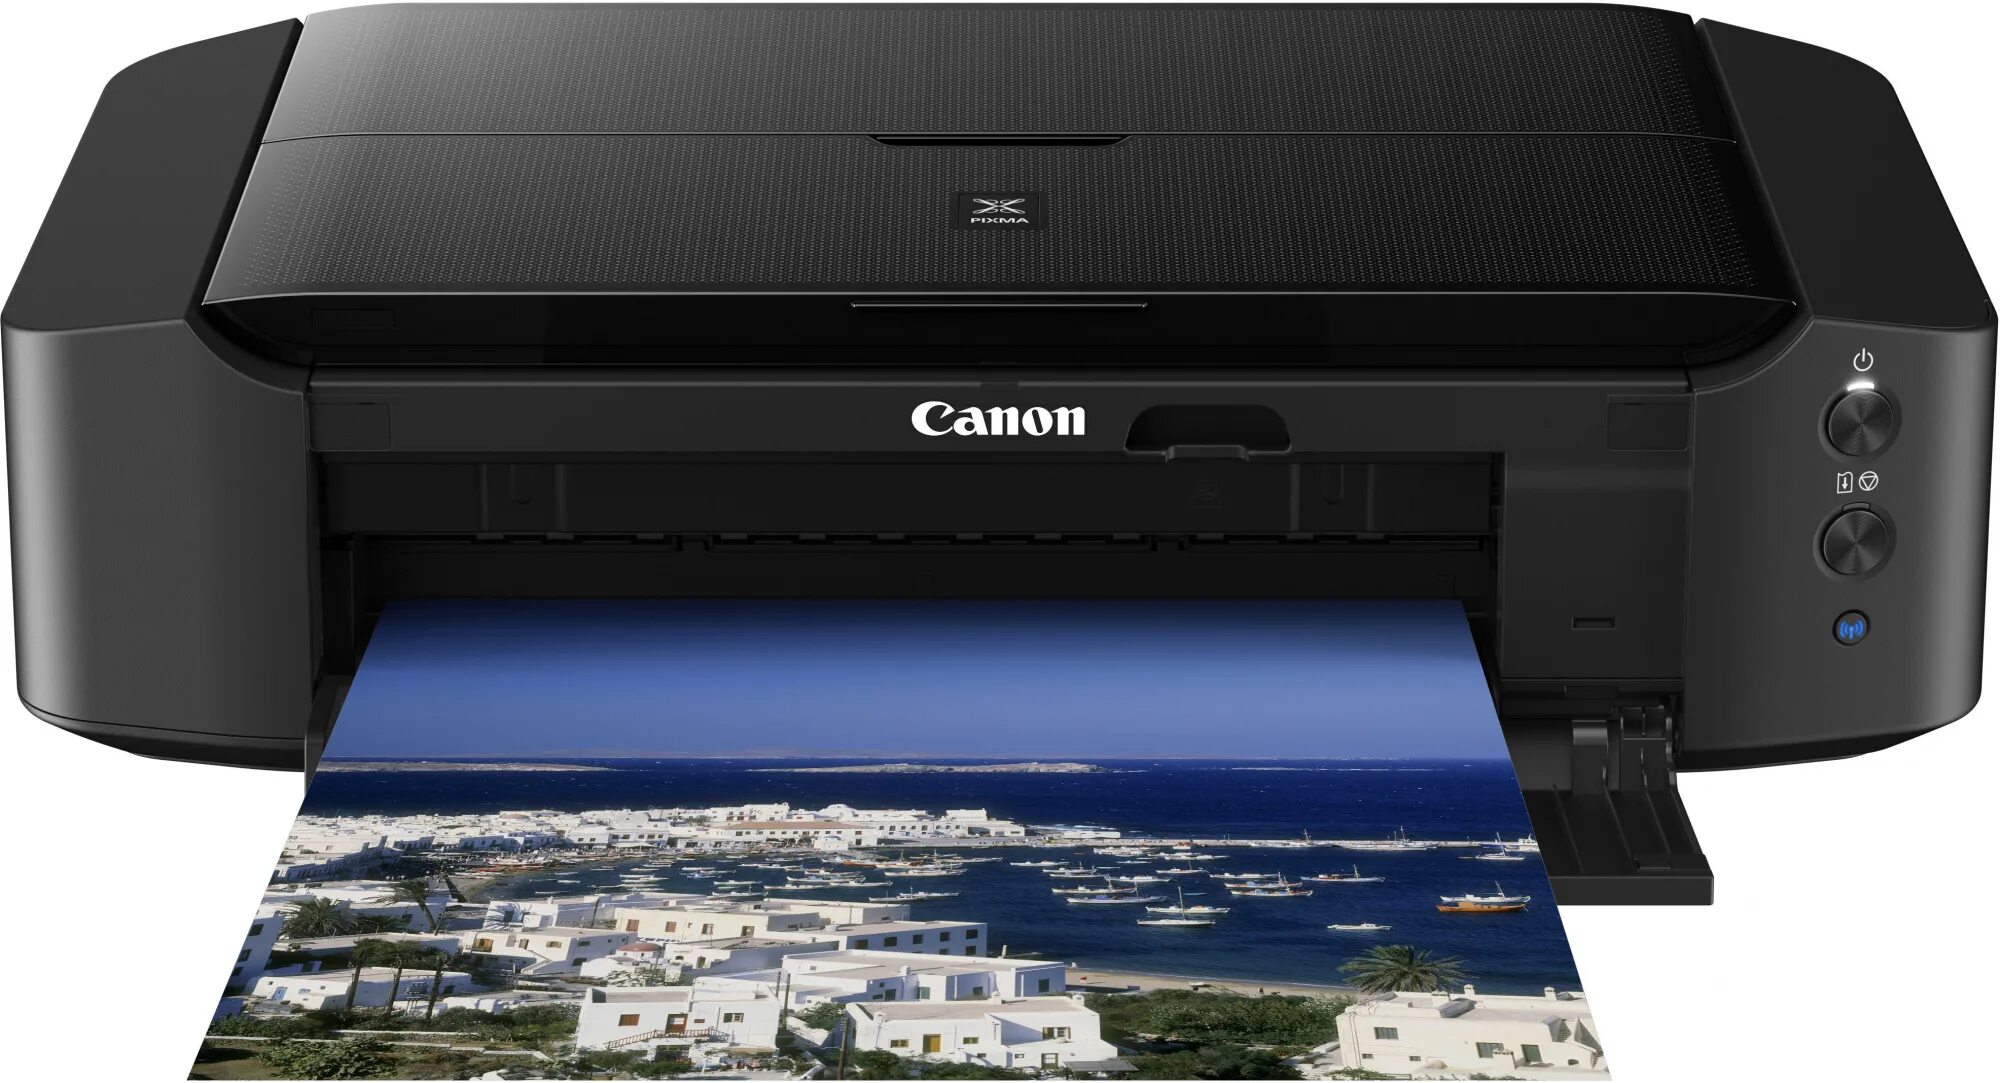 Принтер струйный цветной Canon PIXMA. Canon PIXMA 8740. Принтер струйный Кэнон пиксма 8740. Принтер Кэнон пиксма цветной струйный. Купить принтер в гомеле